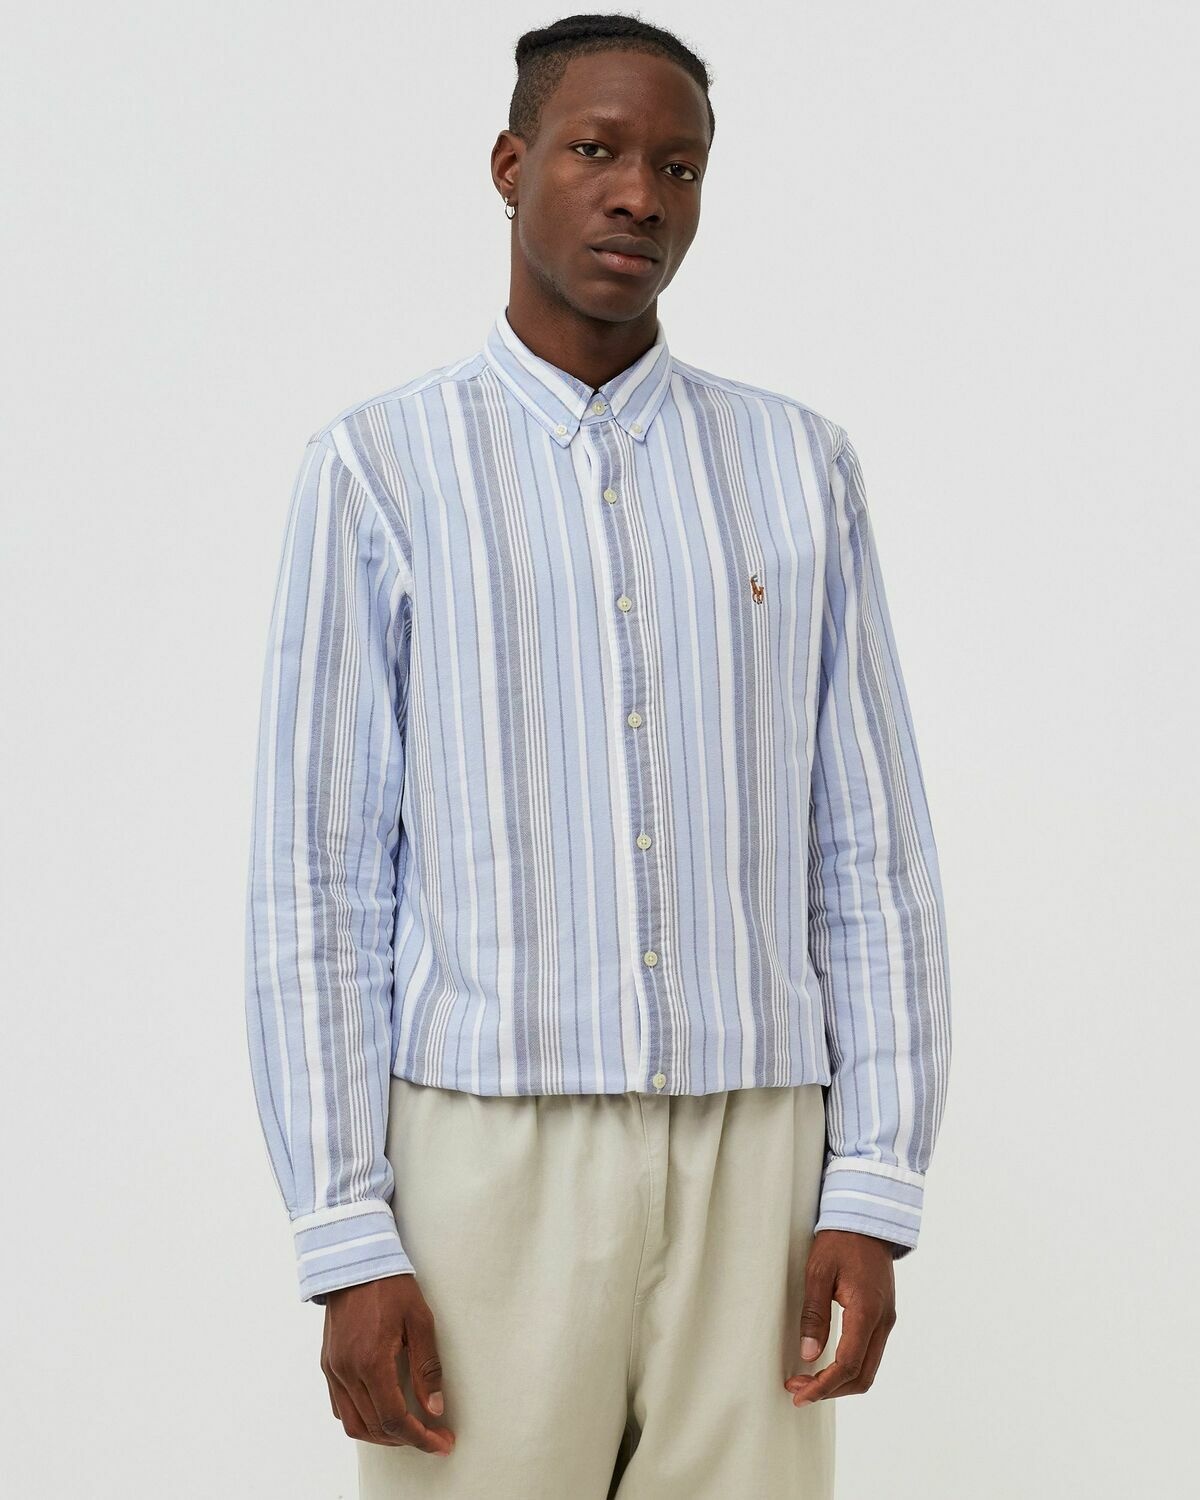 Polo Ralph Lauren Slbdppcs Long Sleeve Sport Shirt Blue - Mens